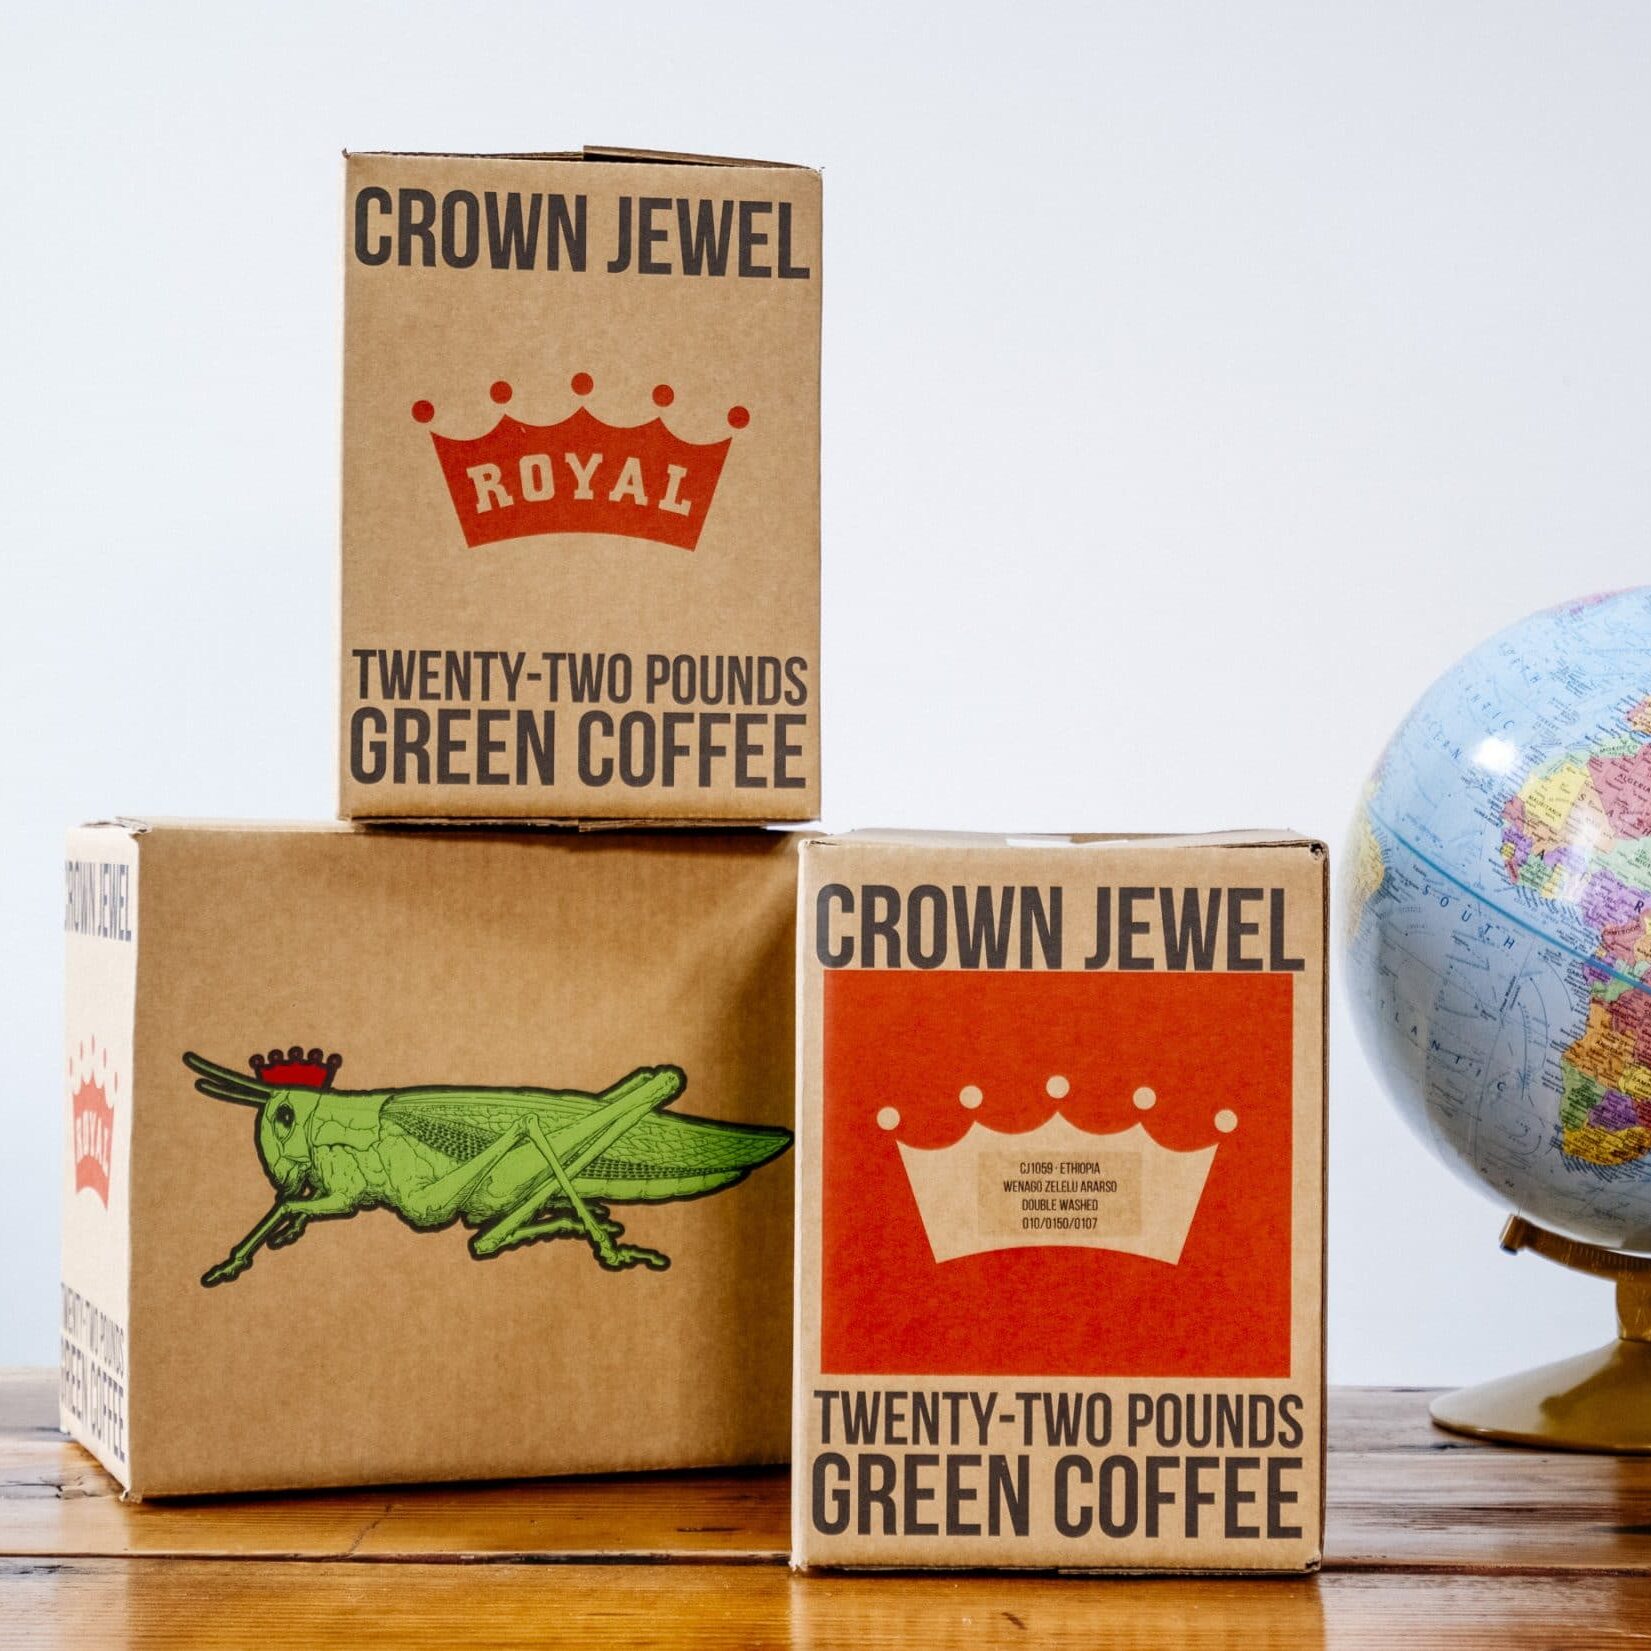 Royal Coffee Crown Jewel coffee